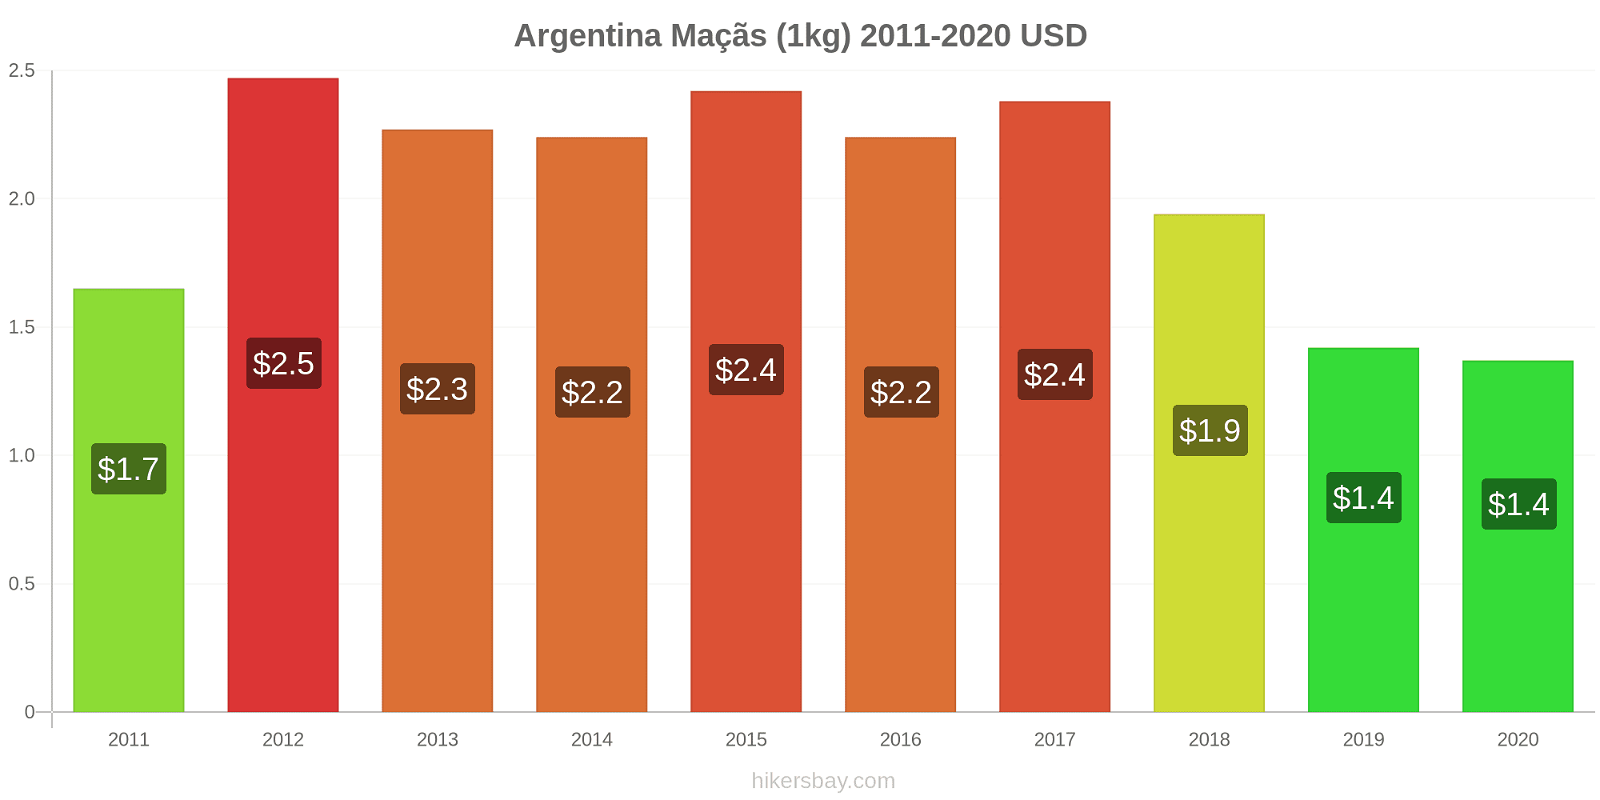 Argentina variação de preço Maçãs (1kg) hikersbay.com